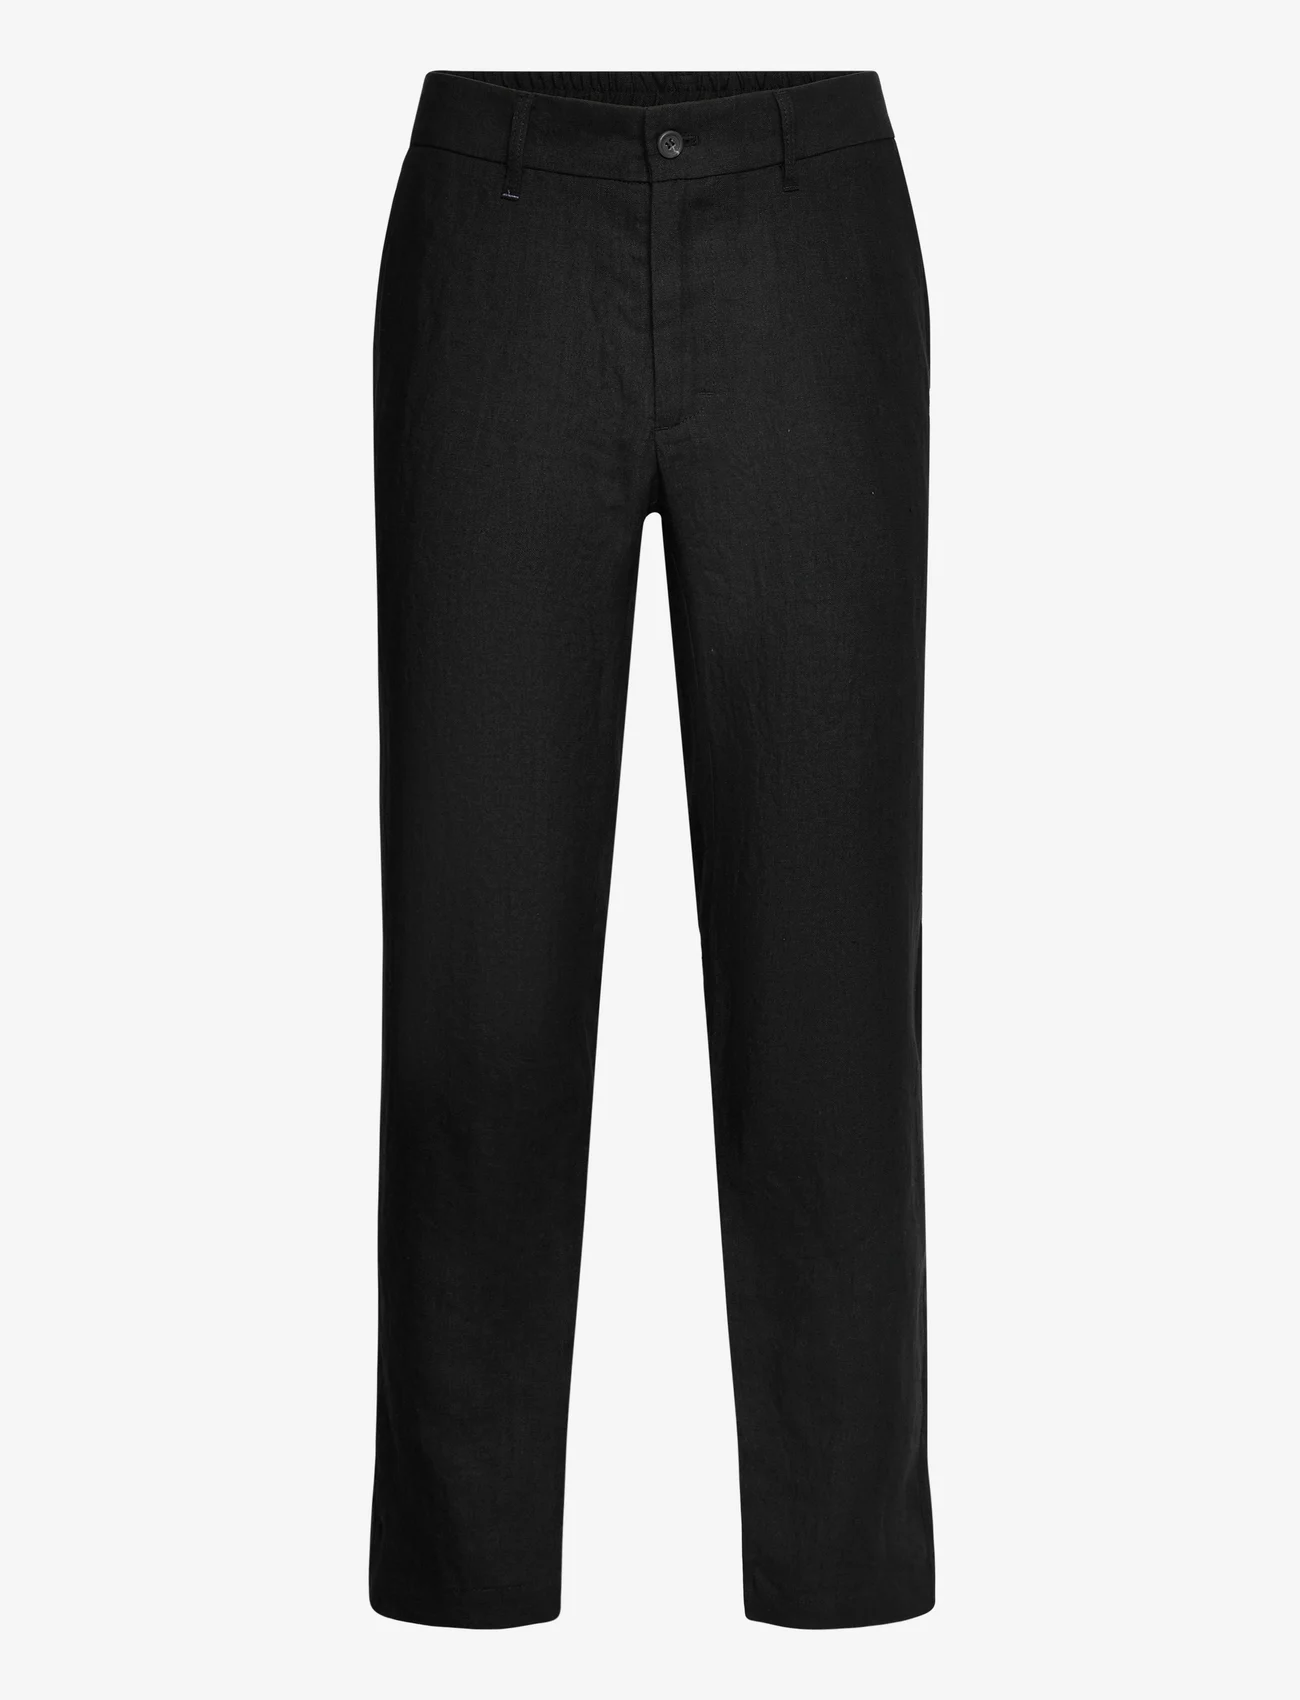 FRENN - Seppo Linen Trousers - nordic style - black - 1